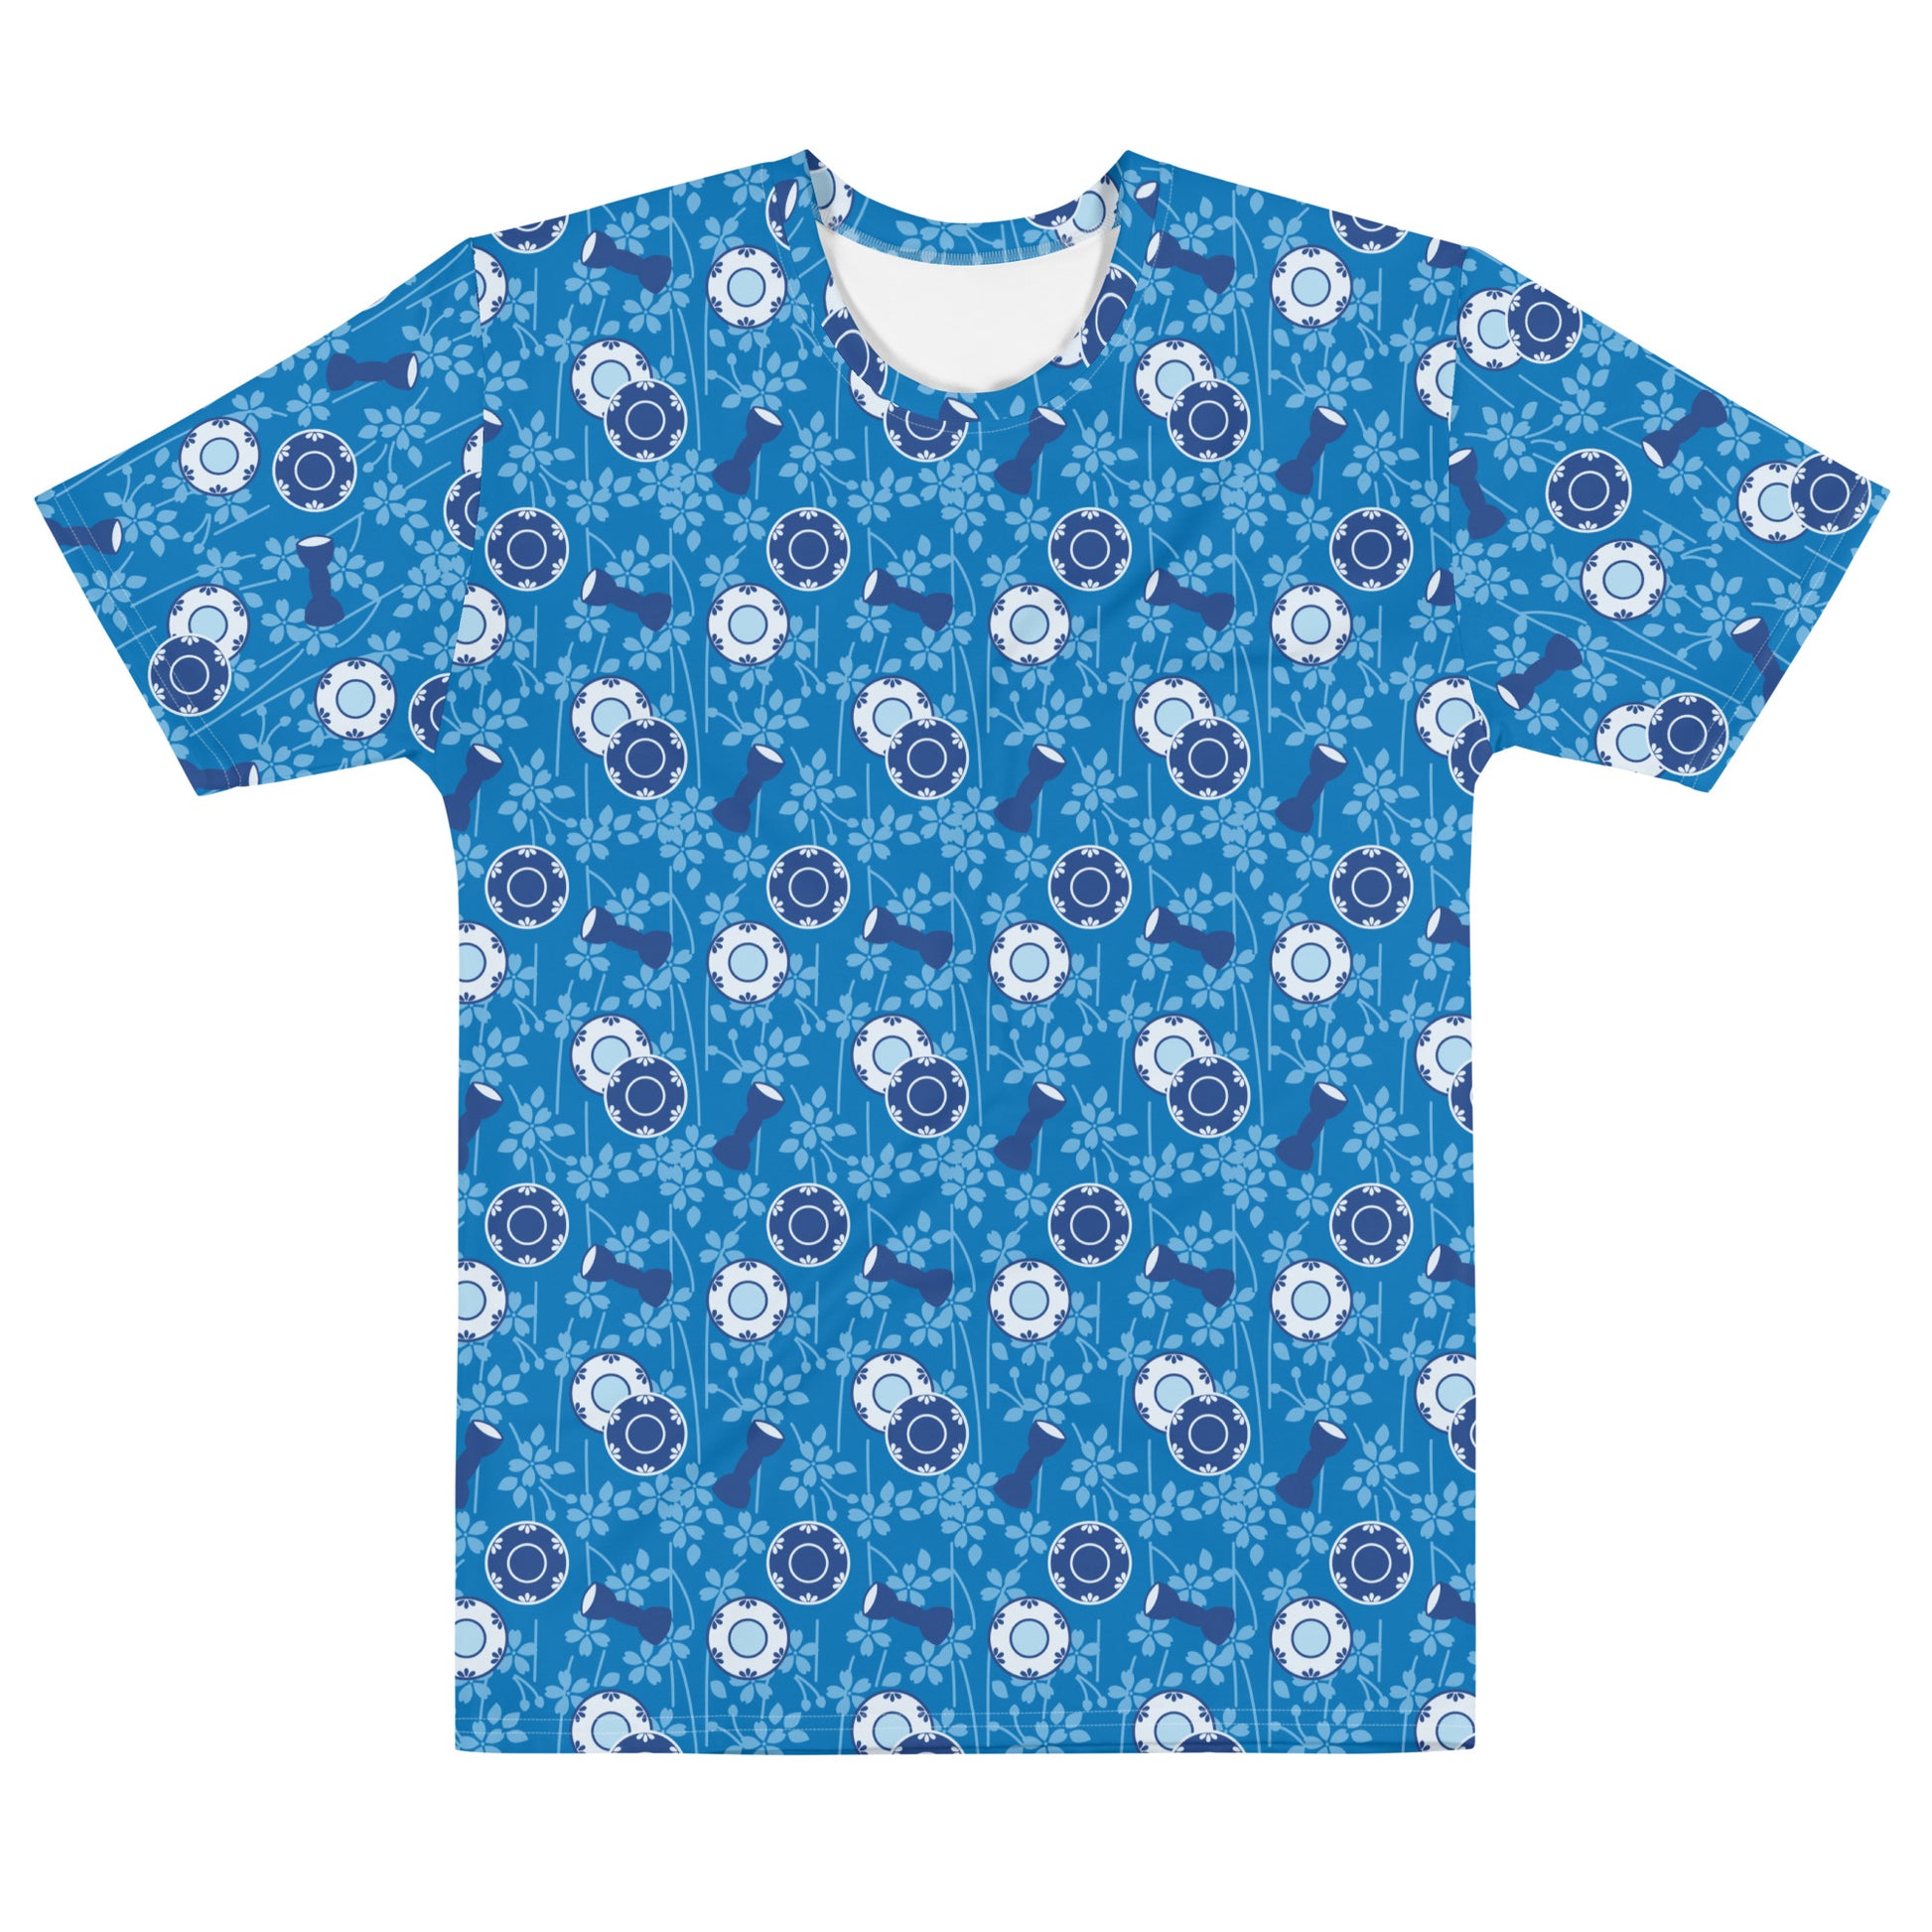 青色の鼓胴の文様のメンズTシャツの前面画像